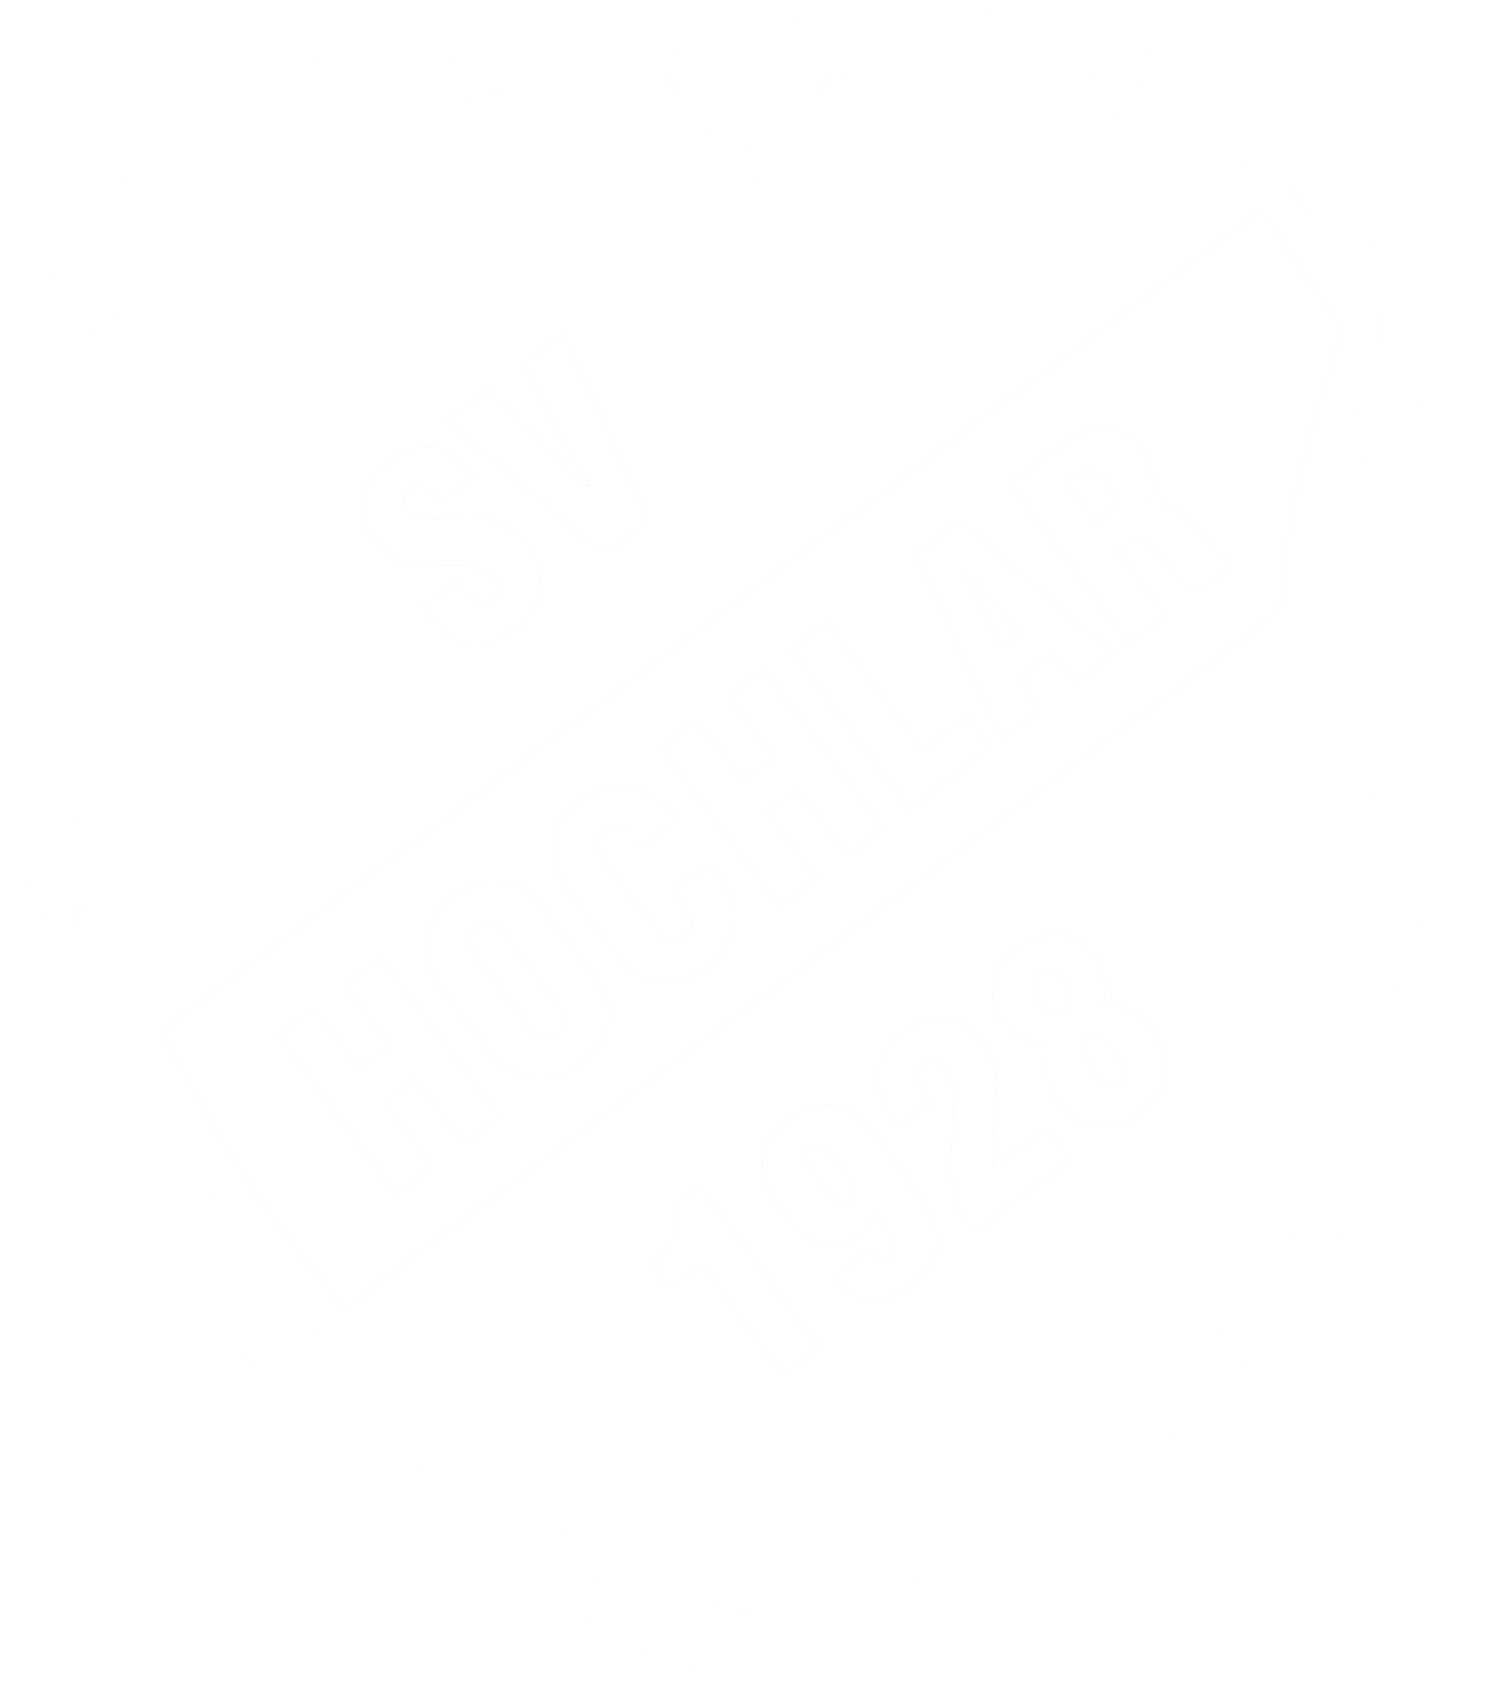 SV Hochlar 1928 e.V.